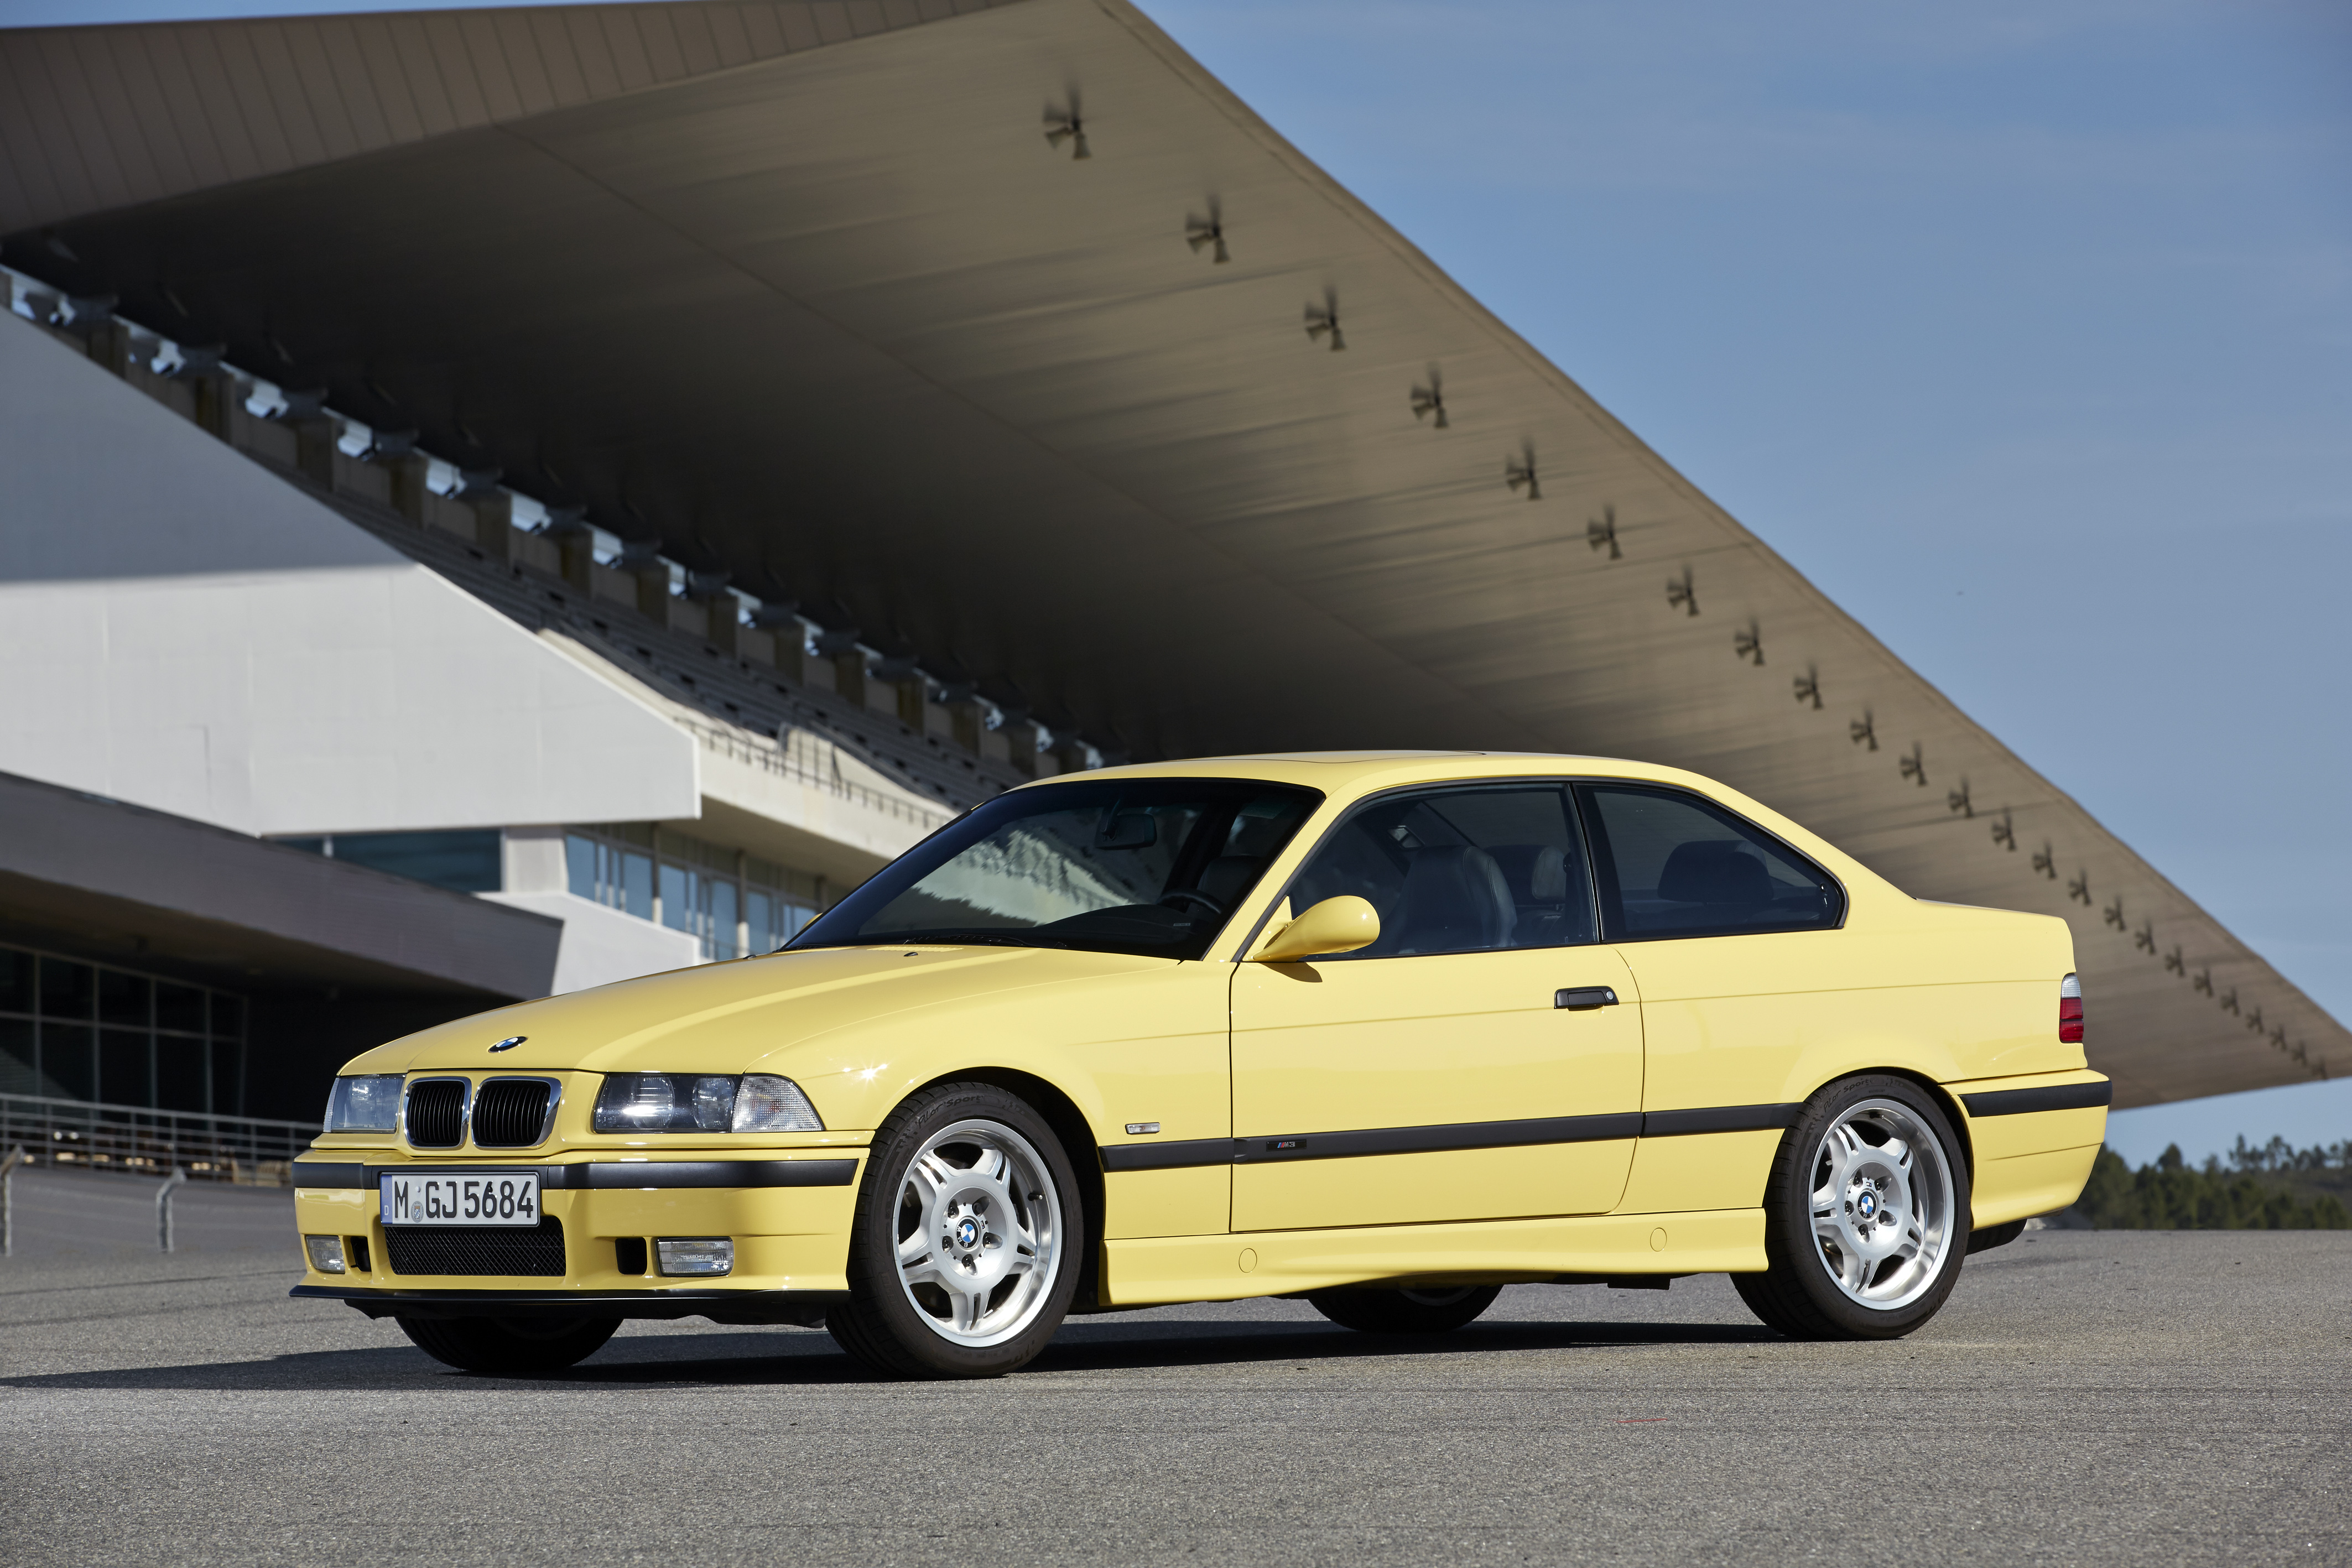 03 36 3. BMW m3 e36 купе. BMW 3 e36 m3. BMW m3 e36 sedan. BMW m3 e36 1992.